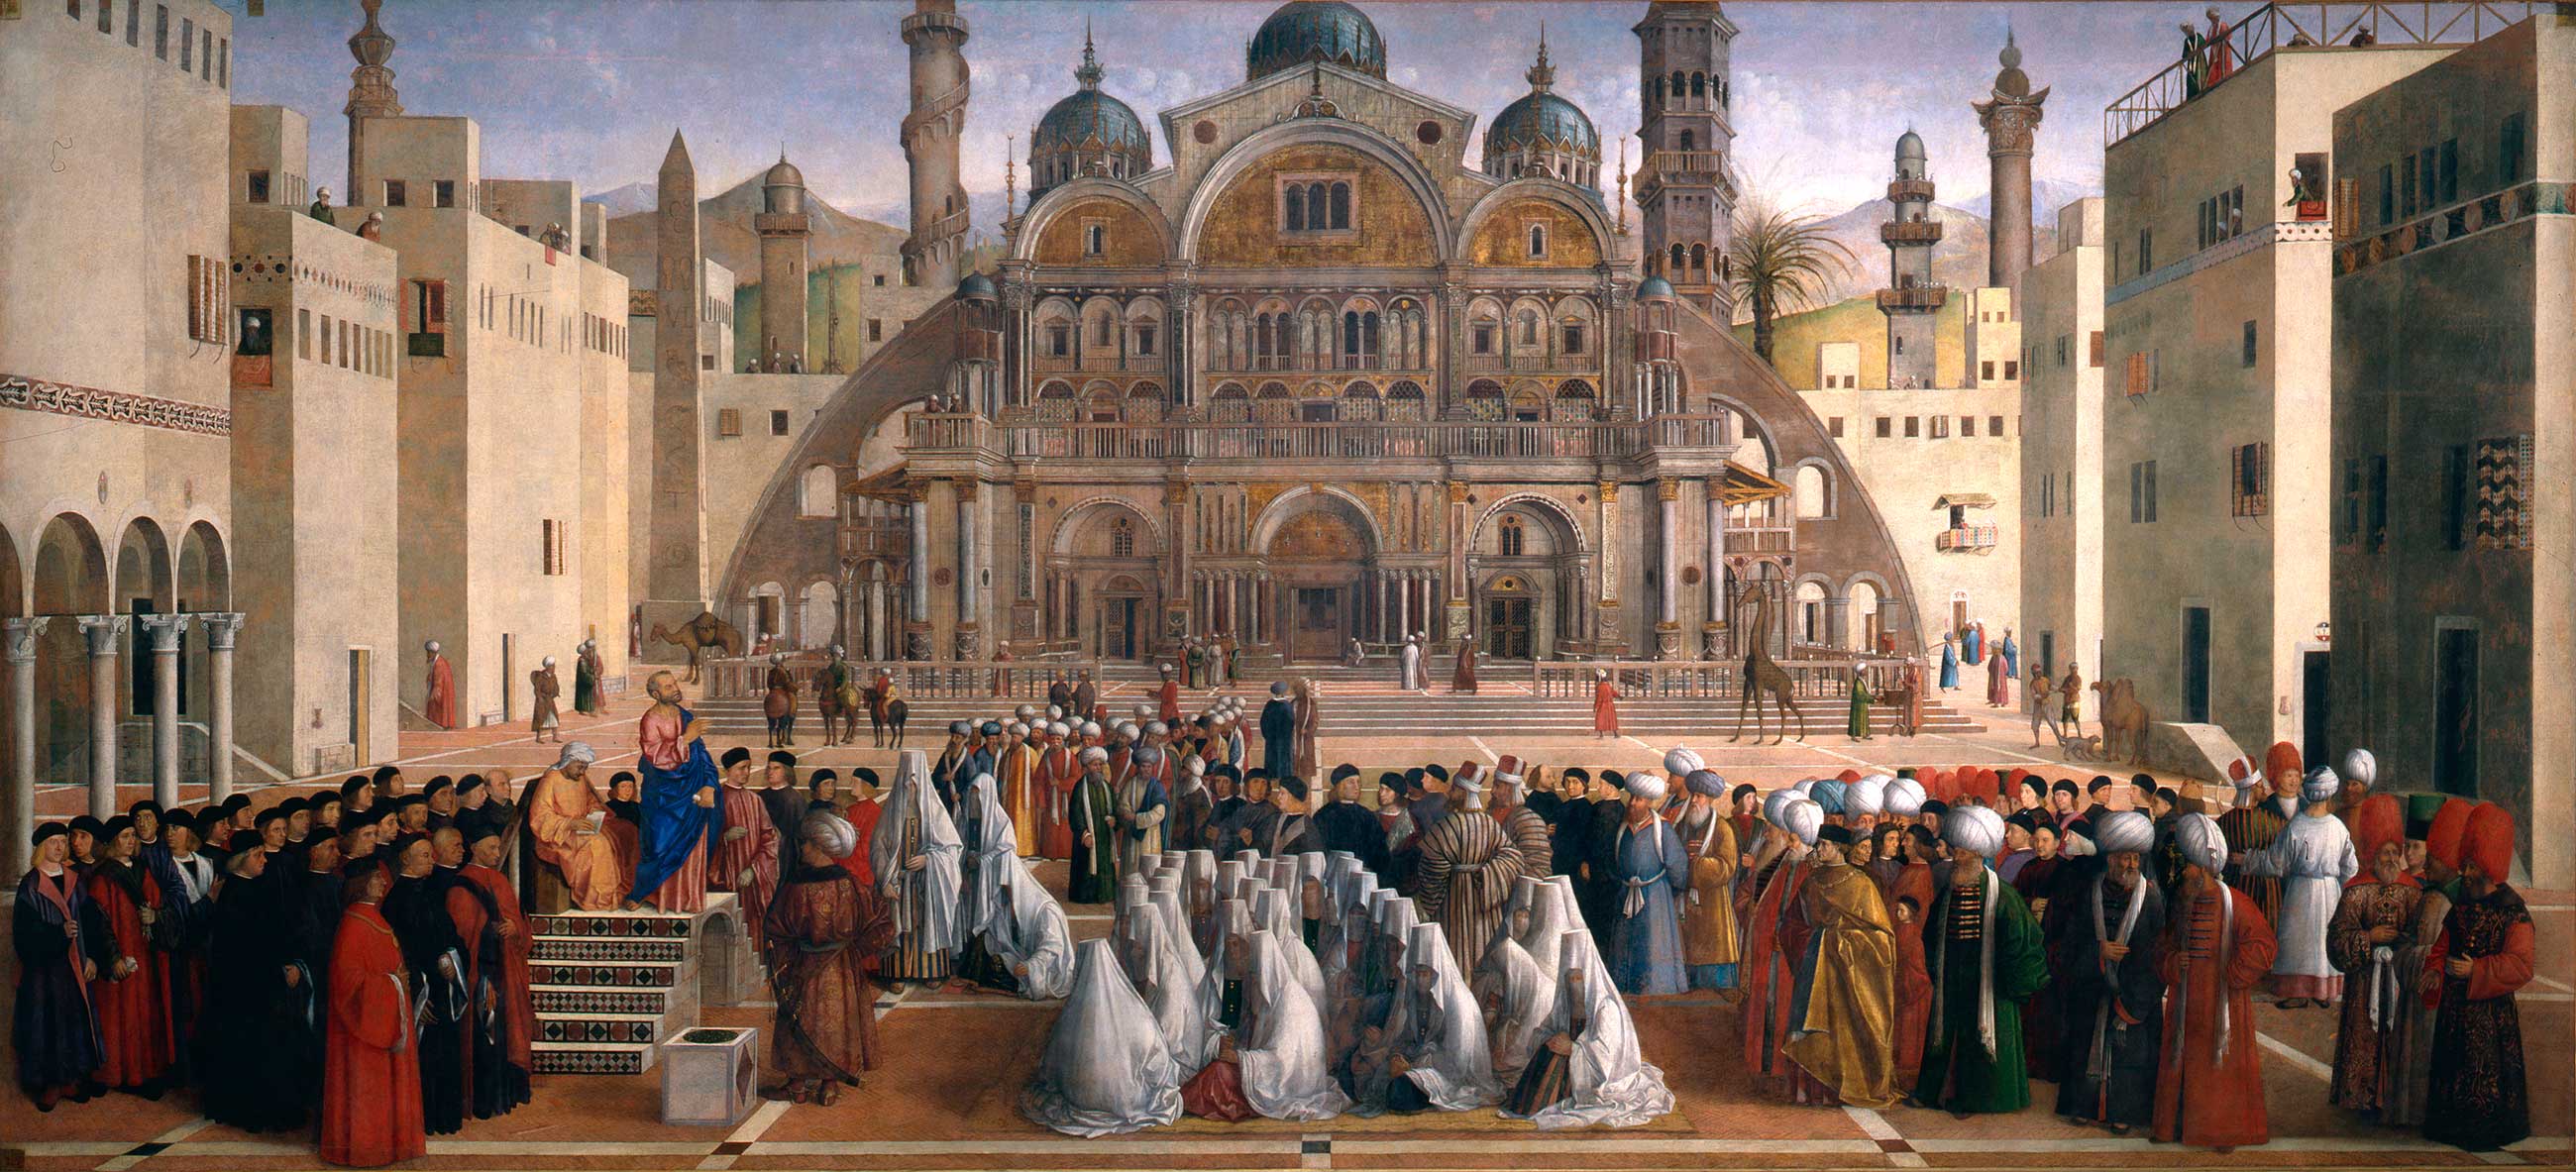 موعظه مَرقُس در اسکندریه by Gentile Bellini and Giovanni Bellini - 1504-07 - 347 × 770 سانتی متر 